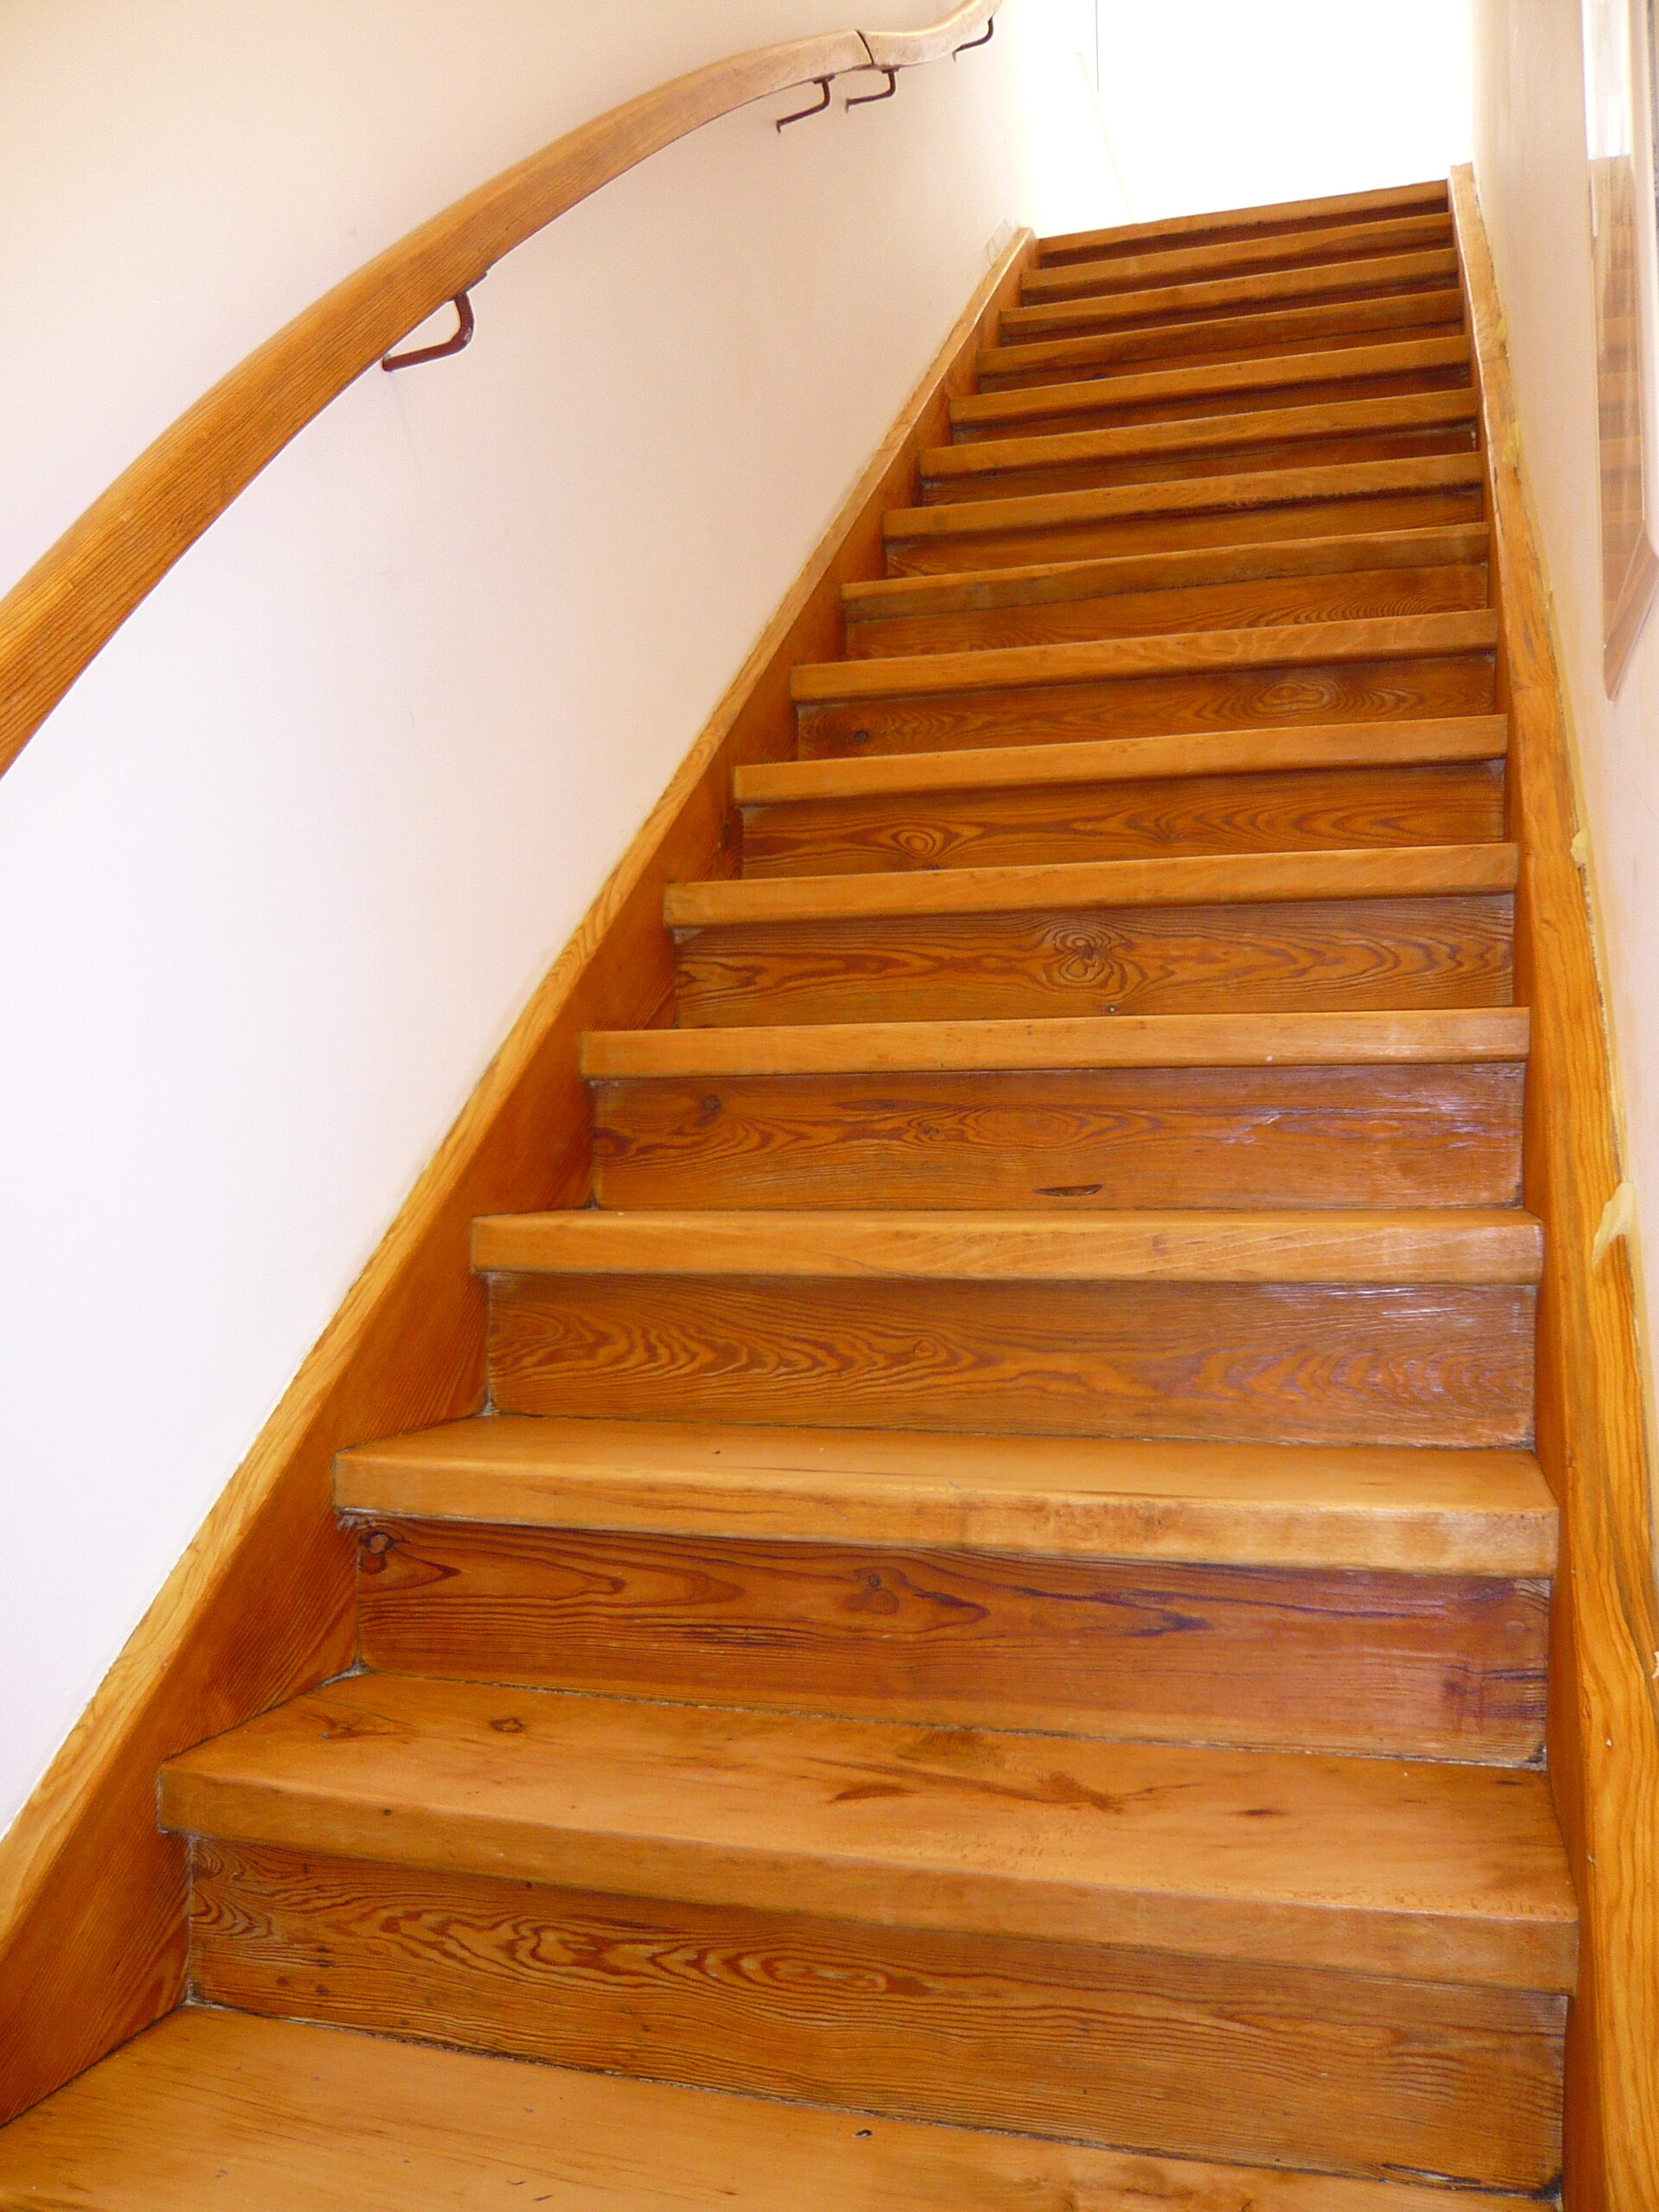 Read more about the article Umsonstladen: Renovierte Treppe ist ein echtes Schmuckstück geworden!